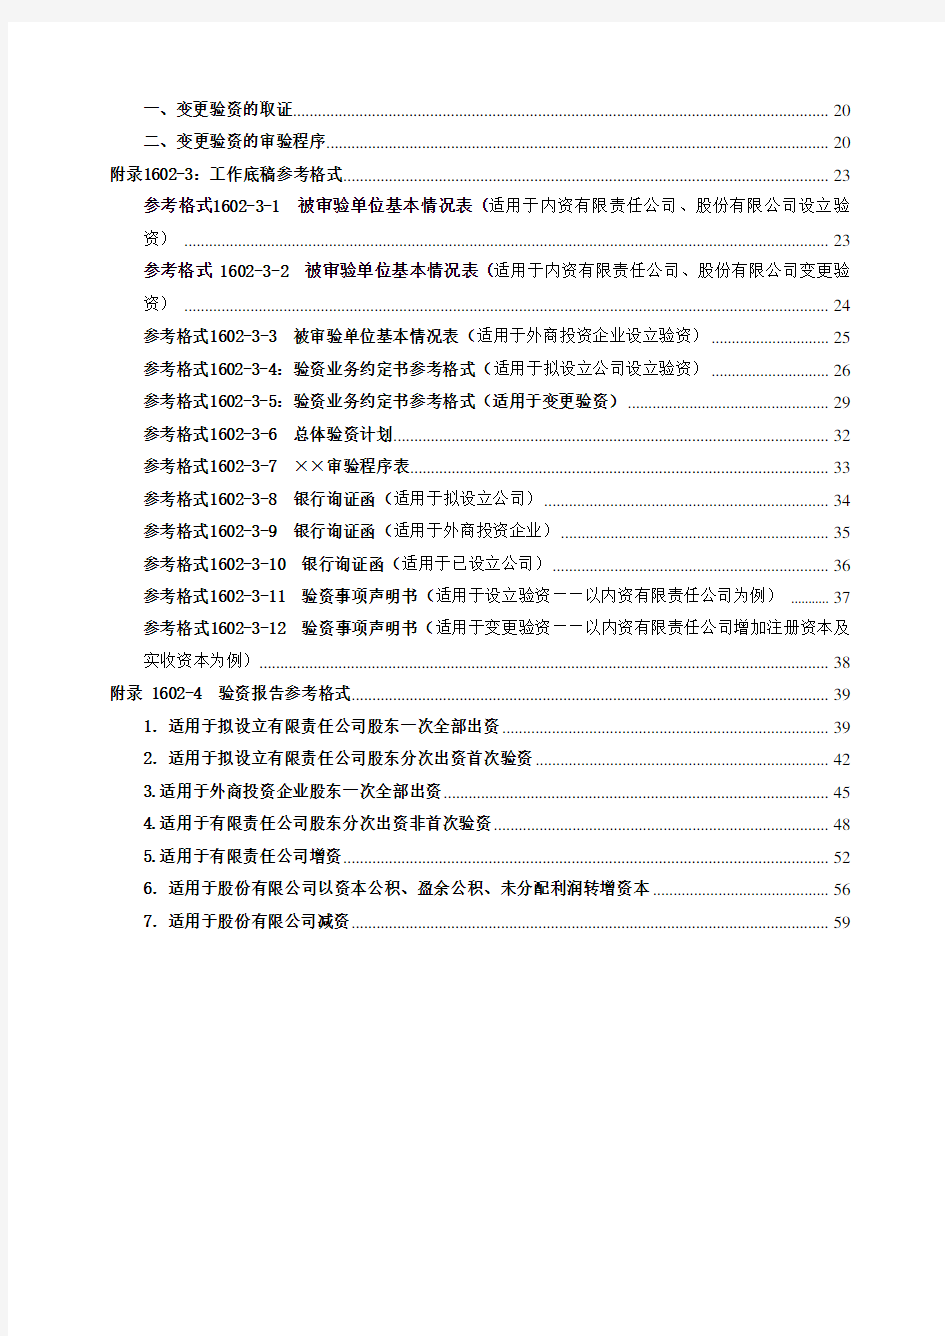 中国注册会计师审计准则第1602号验资指南